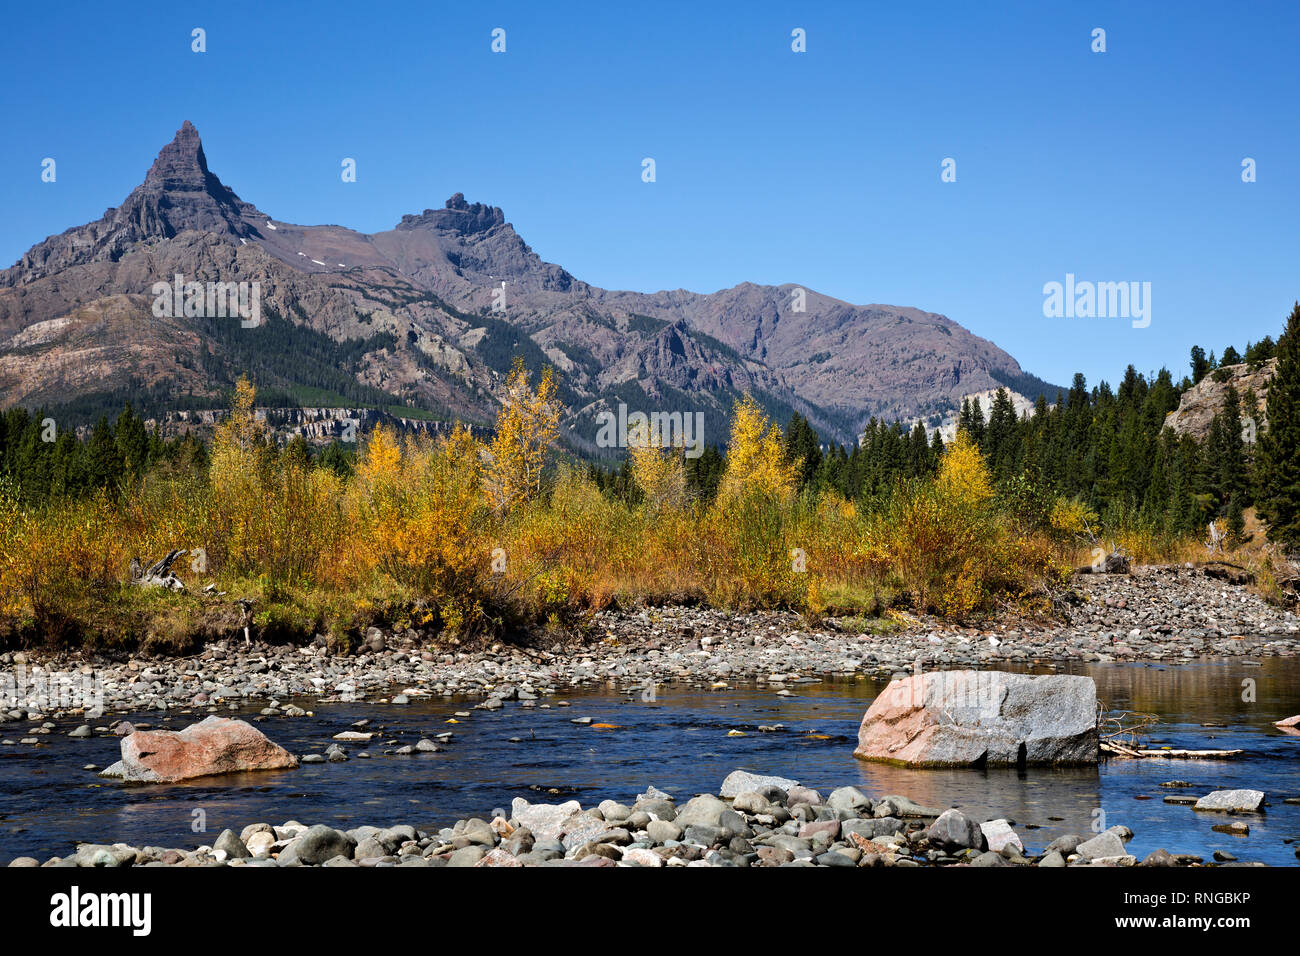 WYOMING - la couleur de l'automne le long des rives de la Clark Fork de la rivière Yellowstone et pilote ci-dessous, dans l'Index Peaks Forêt nationale de Shoshone. Banque D'Images